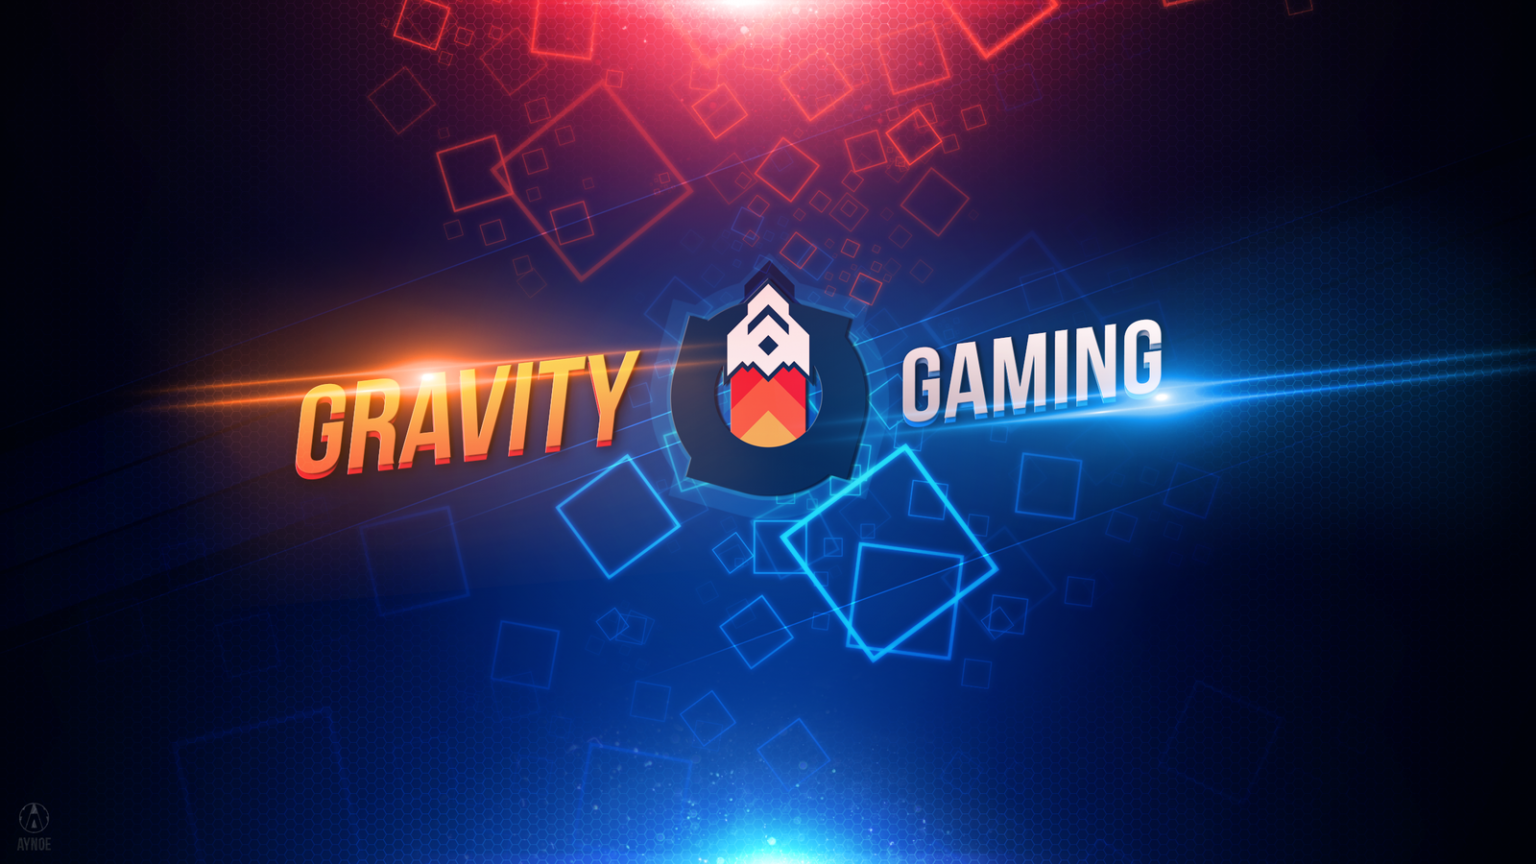 [26+] Gravity Gaming Wallpapers | WallpaperSafari